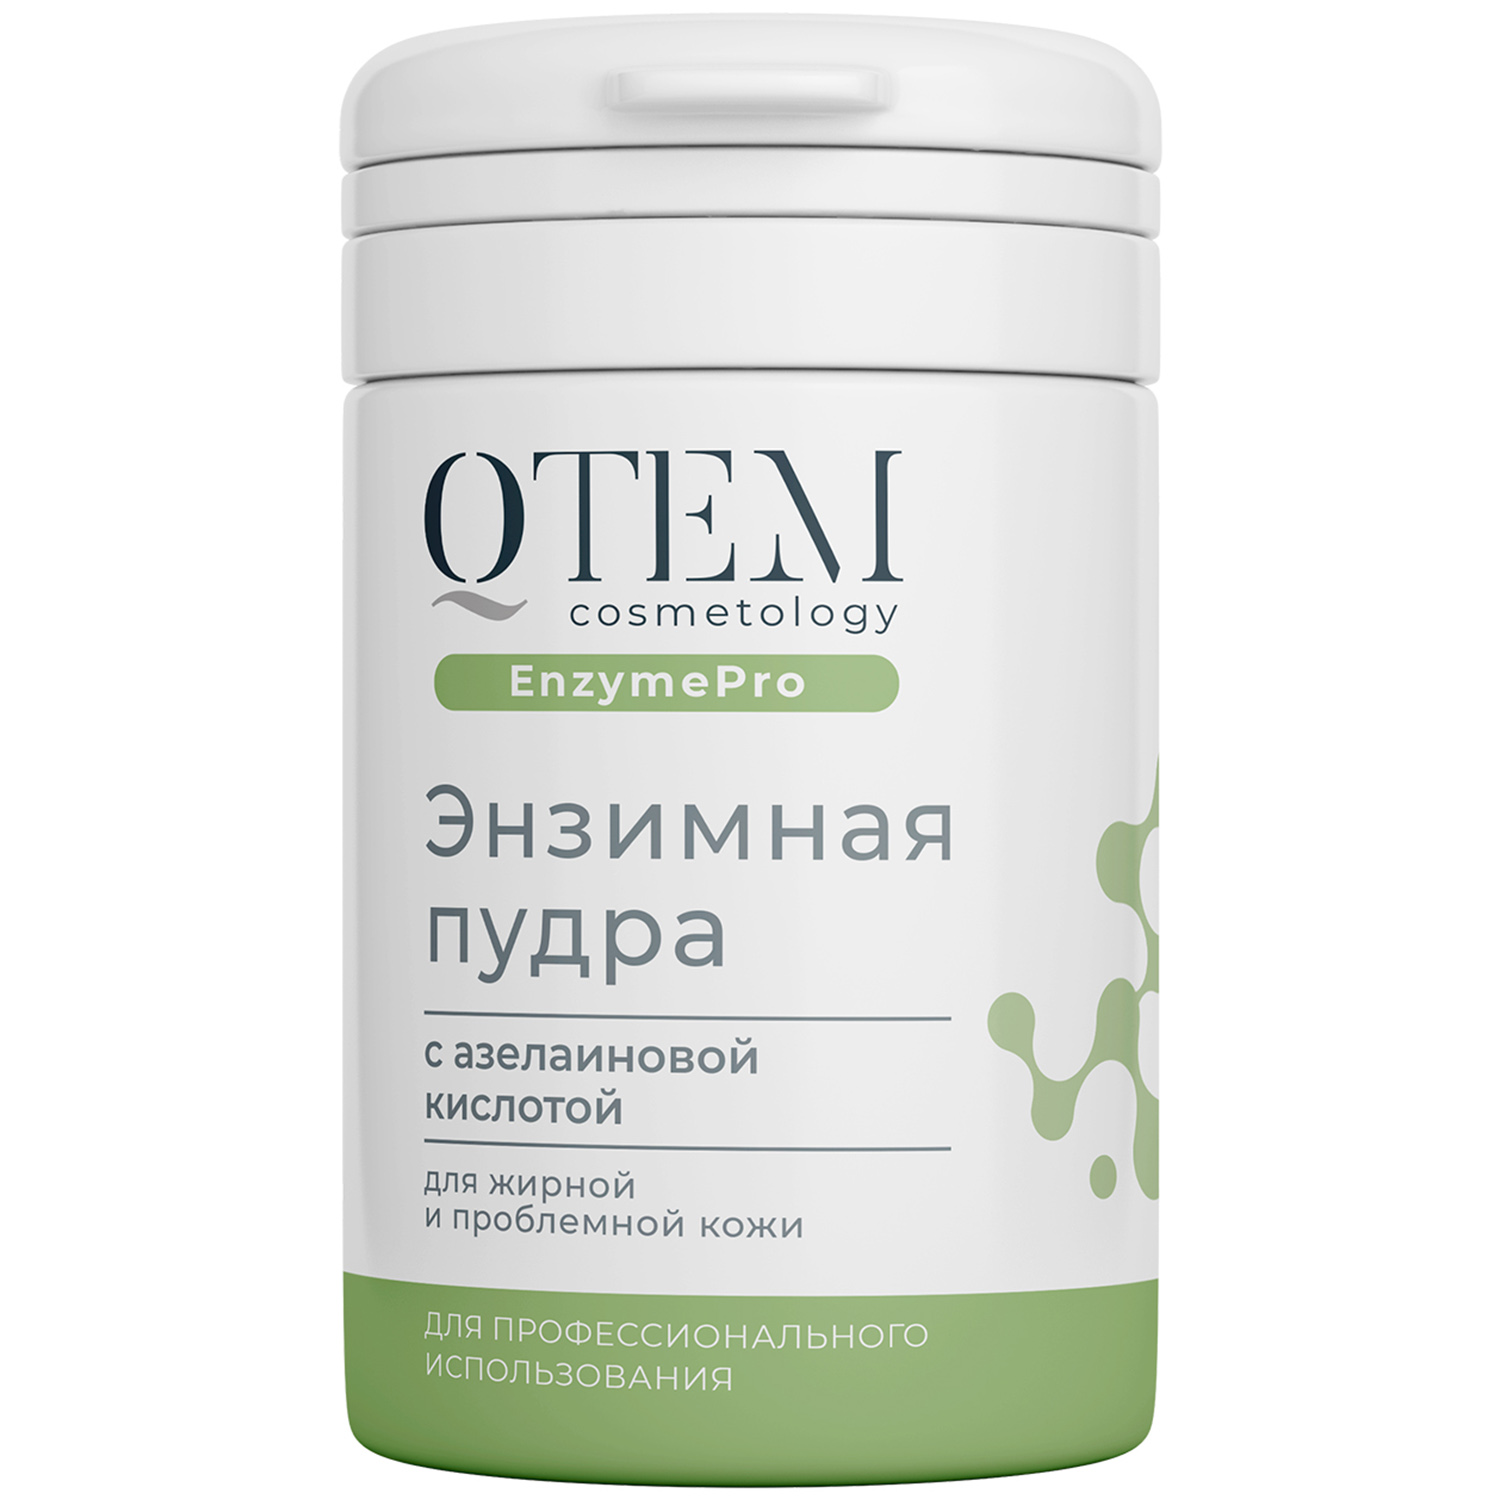 Qtem Энзимный пудра с азелаиновой кислотой для жирной и проблемной кожи, 65 г (Qtem, Cosmetology)